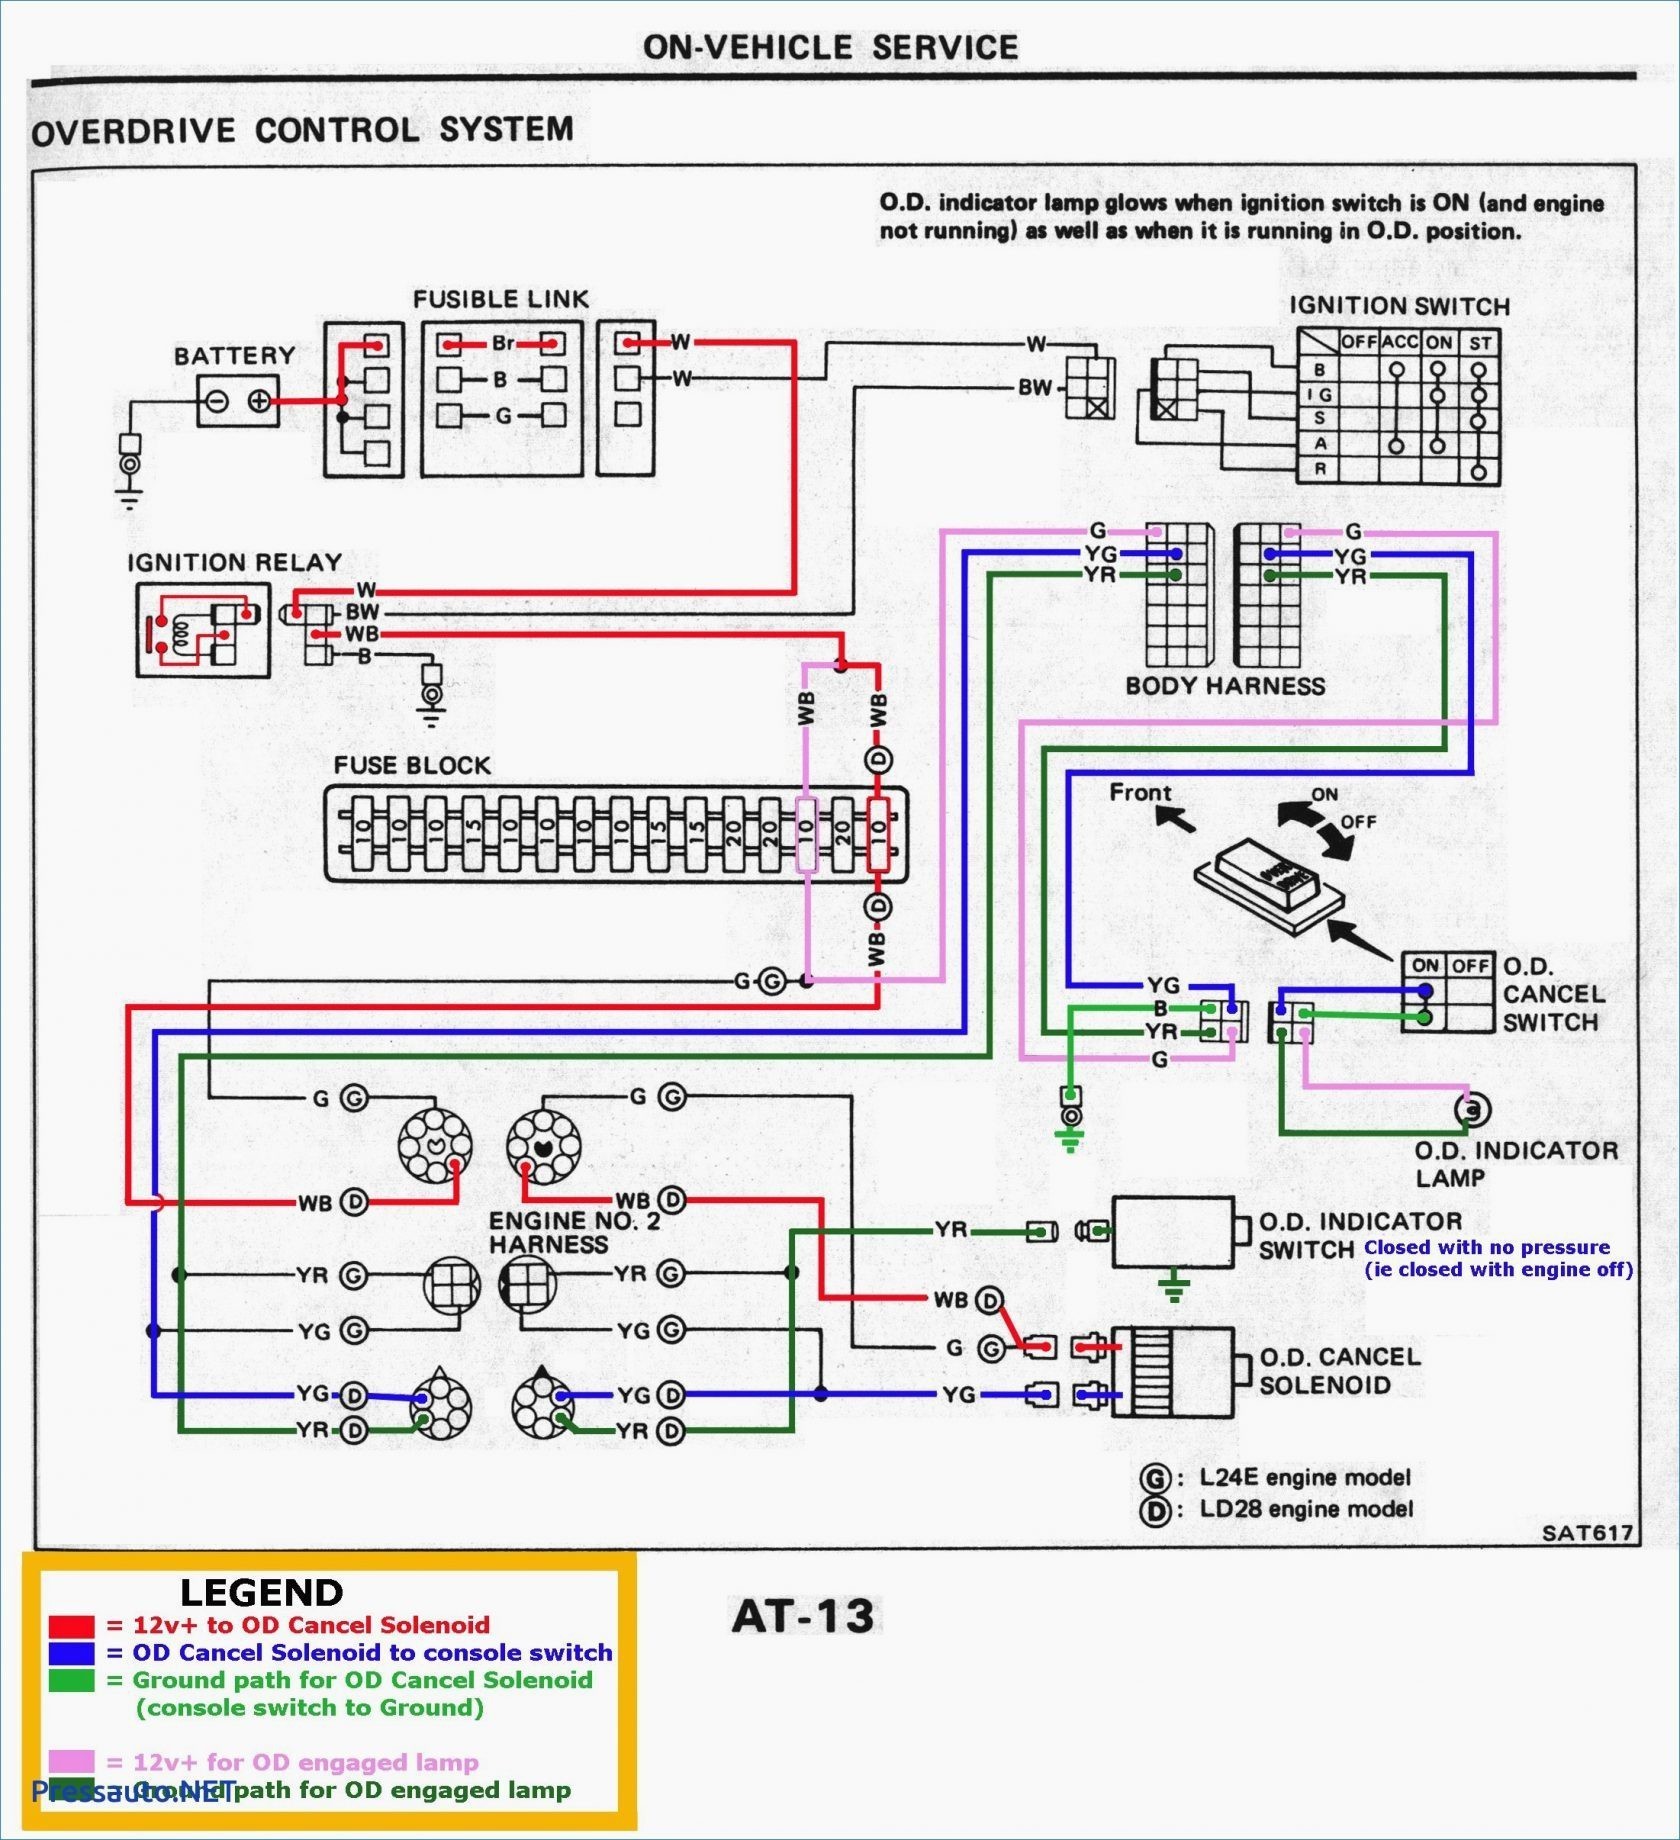 Car Radio Wiring Diagram Car Wiring Harness Diagram Wiring Diagram toolbox Of Car Radio Wiring Diagram